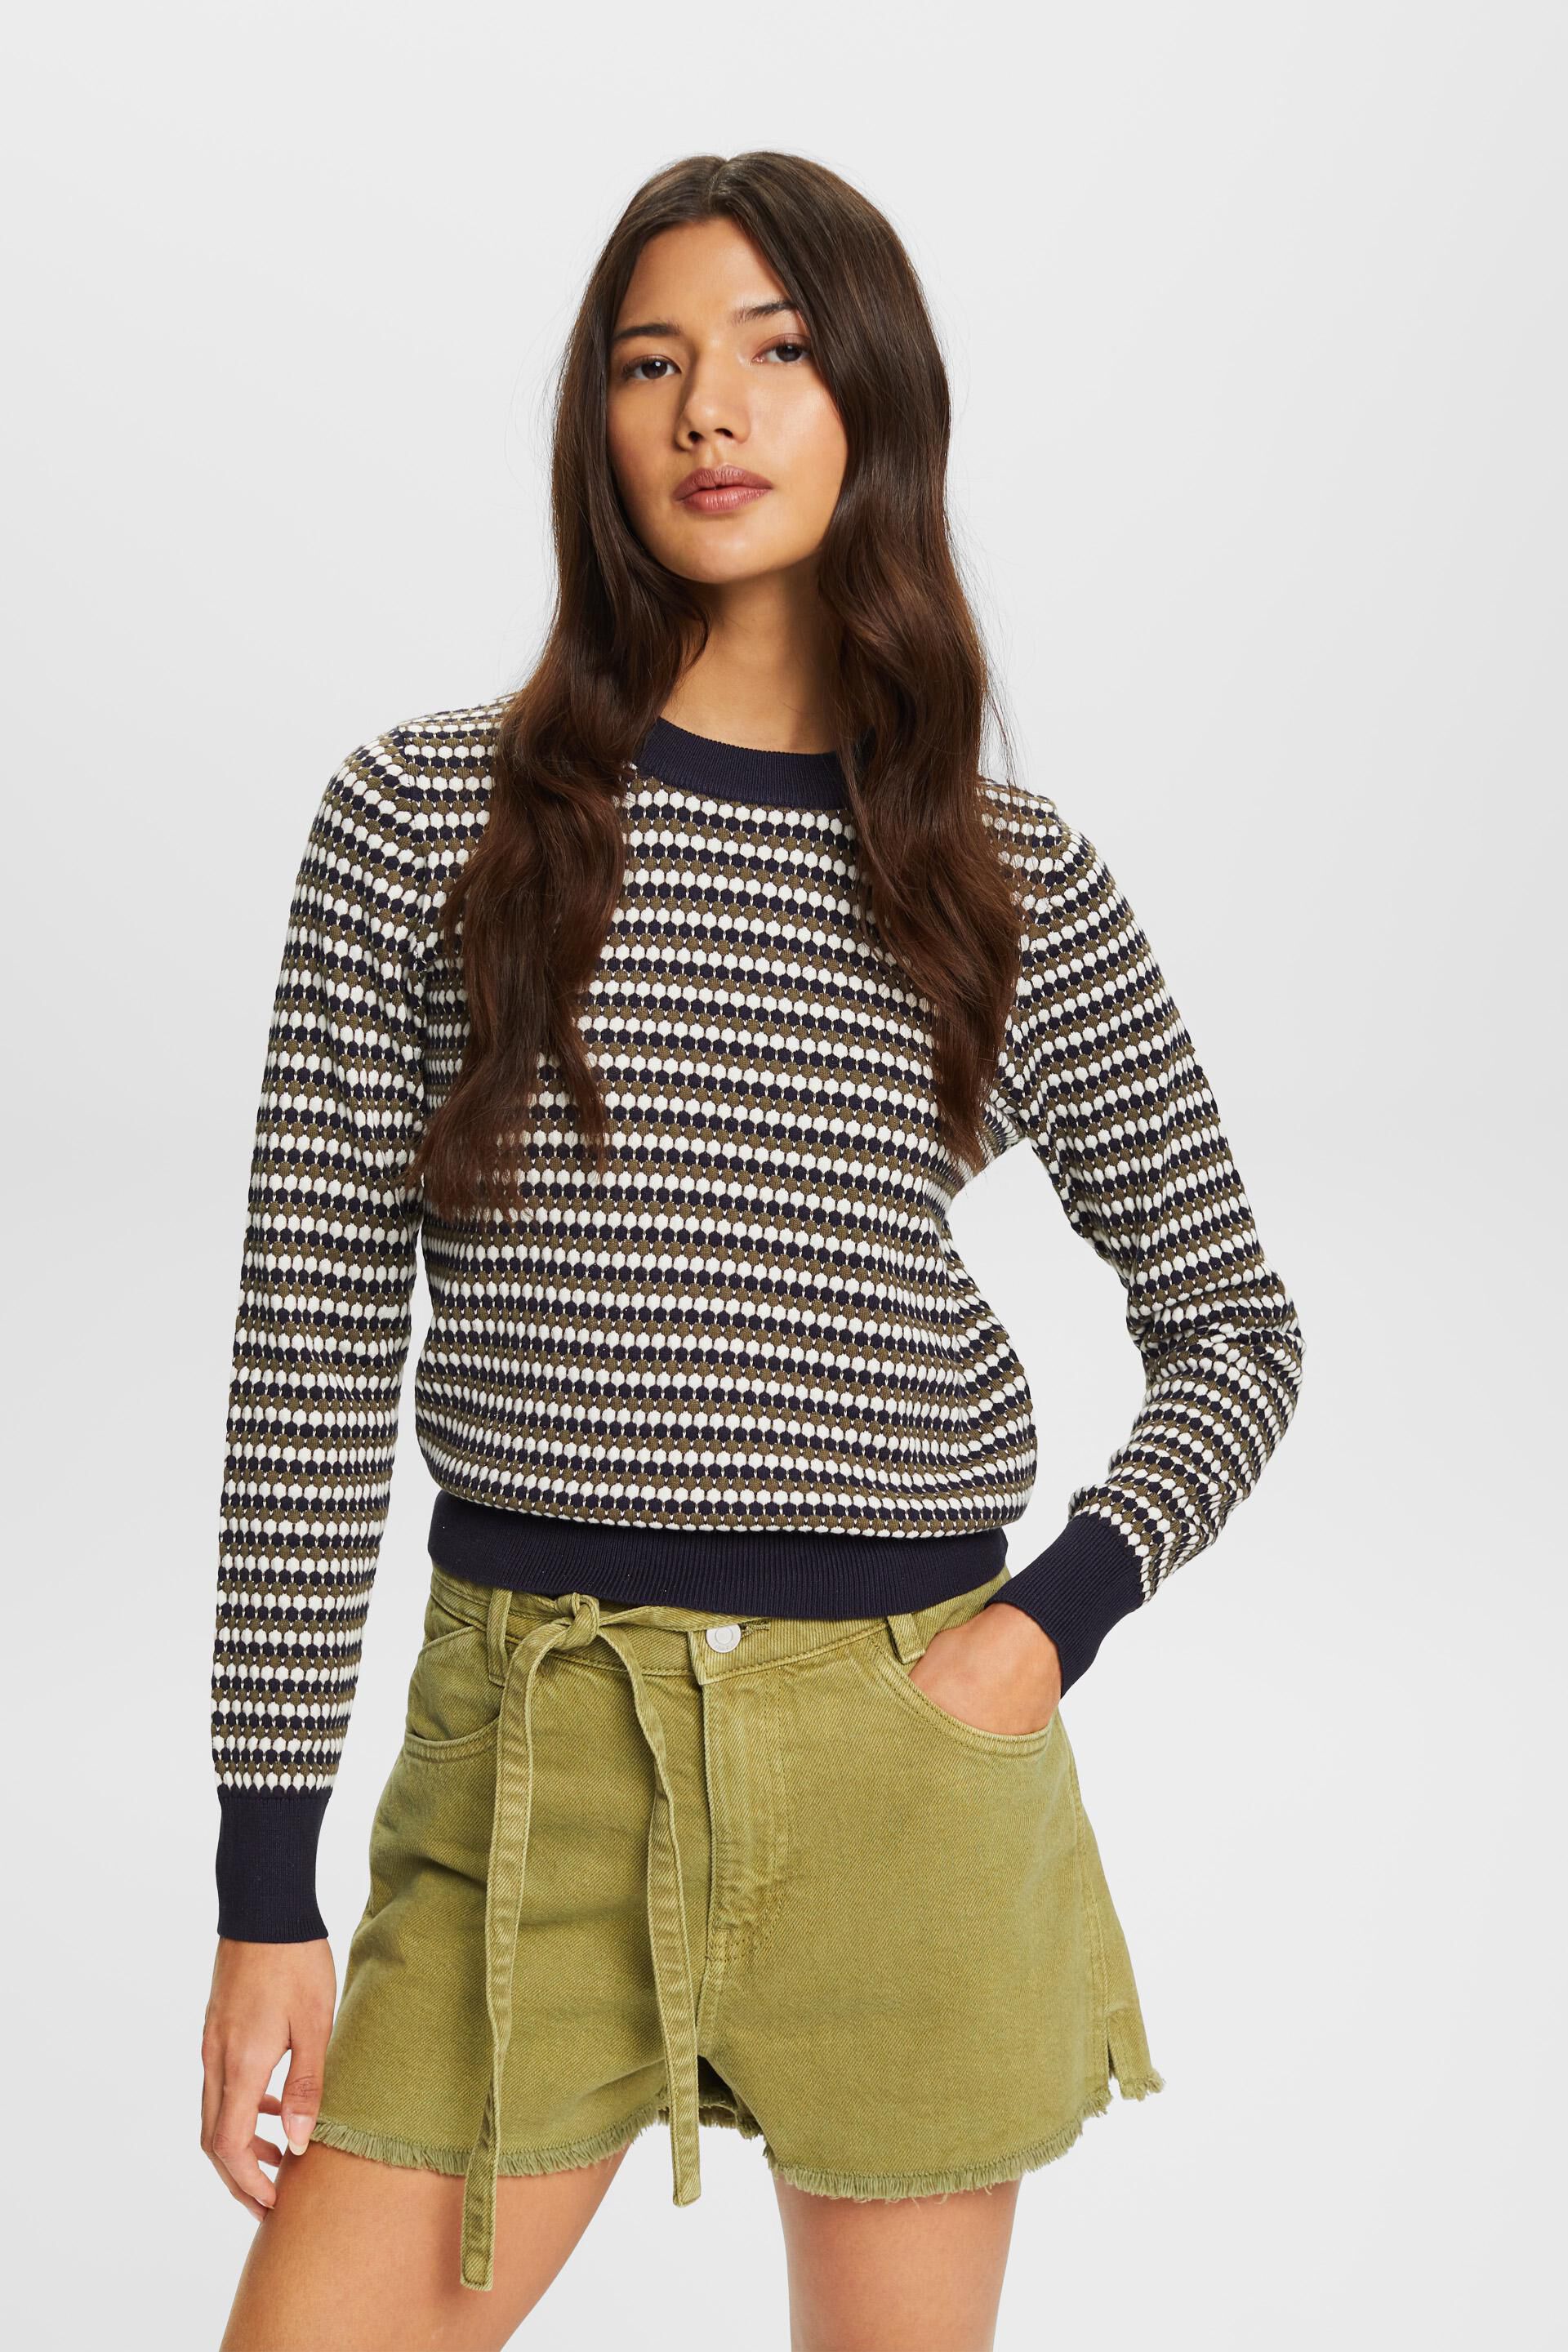 Esprit cotton blend Multi-coloured jumper,